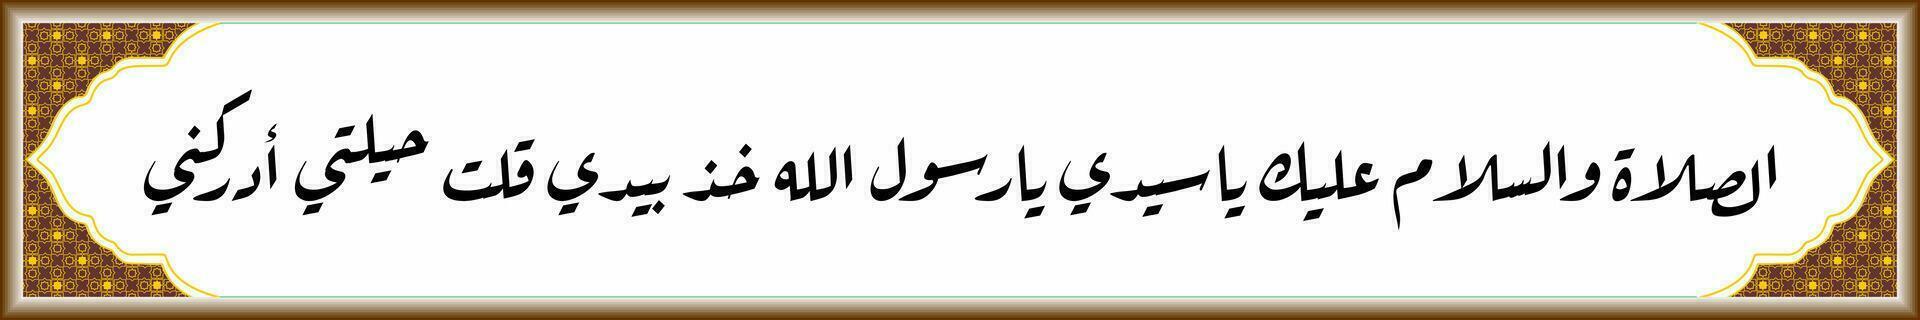 arabicum kalligrafi solawat nabi muhammad adrikni som betyder o Allah, skänka barmhärtighet på vår herre, profet muhammad fick syn på, min ansträngningar är verkligt begränsad, hjälp mig, o Allah, o rasulullah vektor